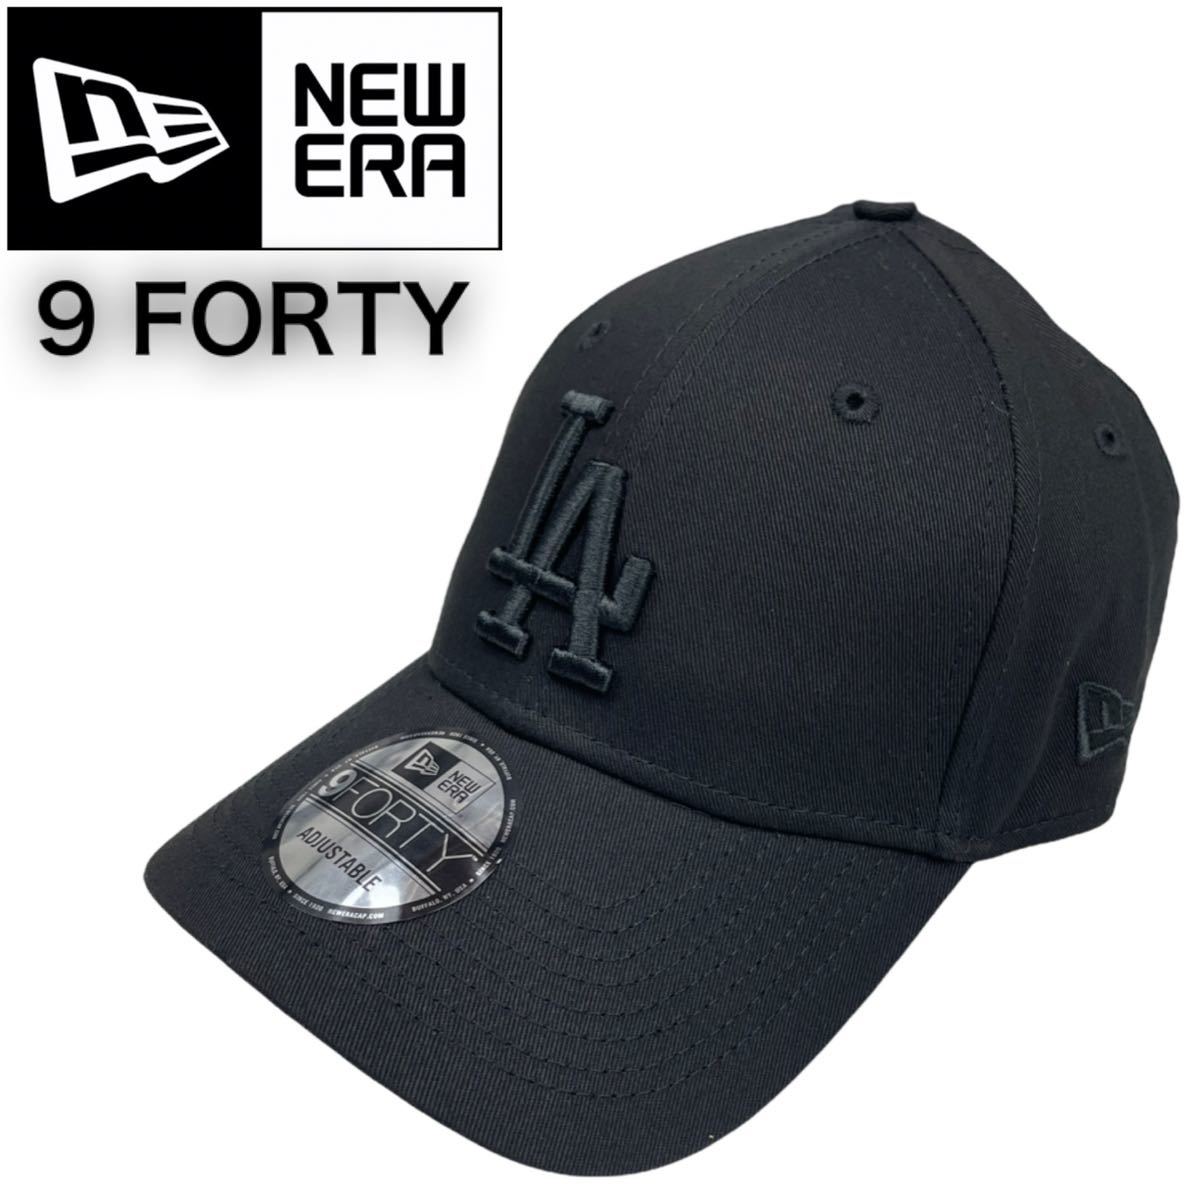 ニューエラ キャップ 帽子 LA 940 ユニセックス ベースボールキャップ フリーサイズ 黒x黒 NEWERA LA 9FORTY BASEBALLCAP 新品